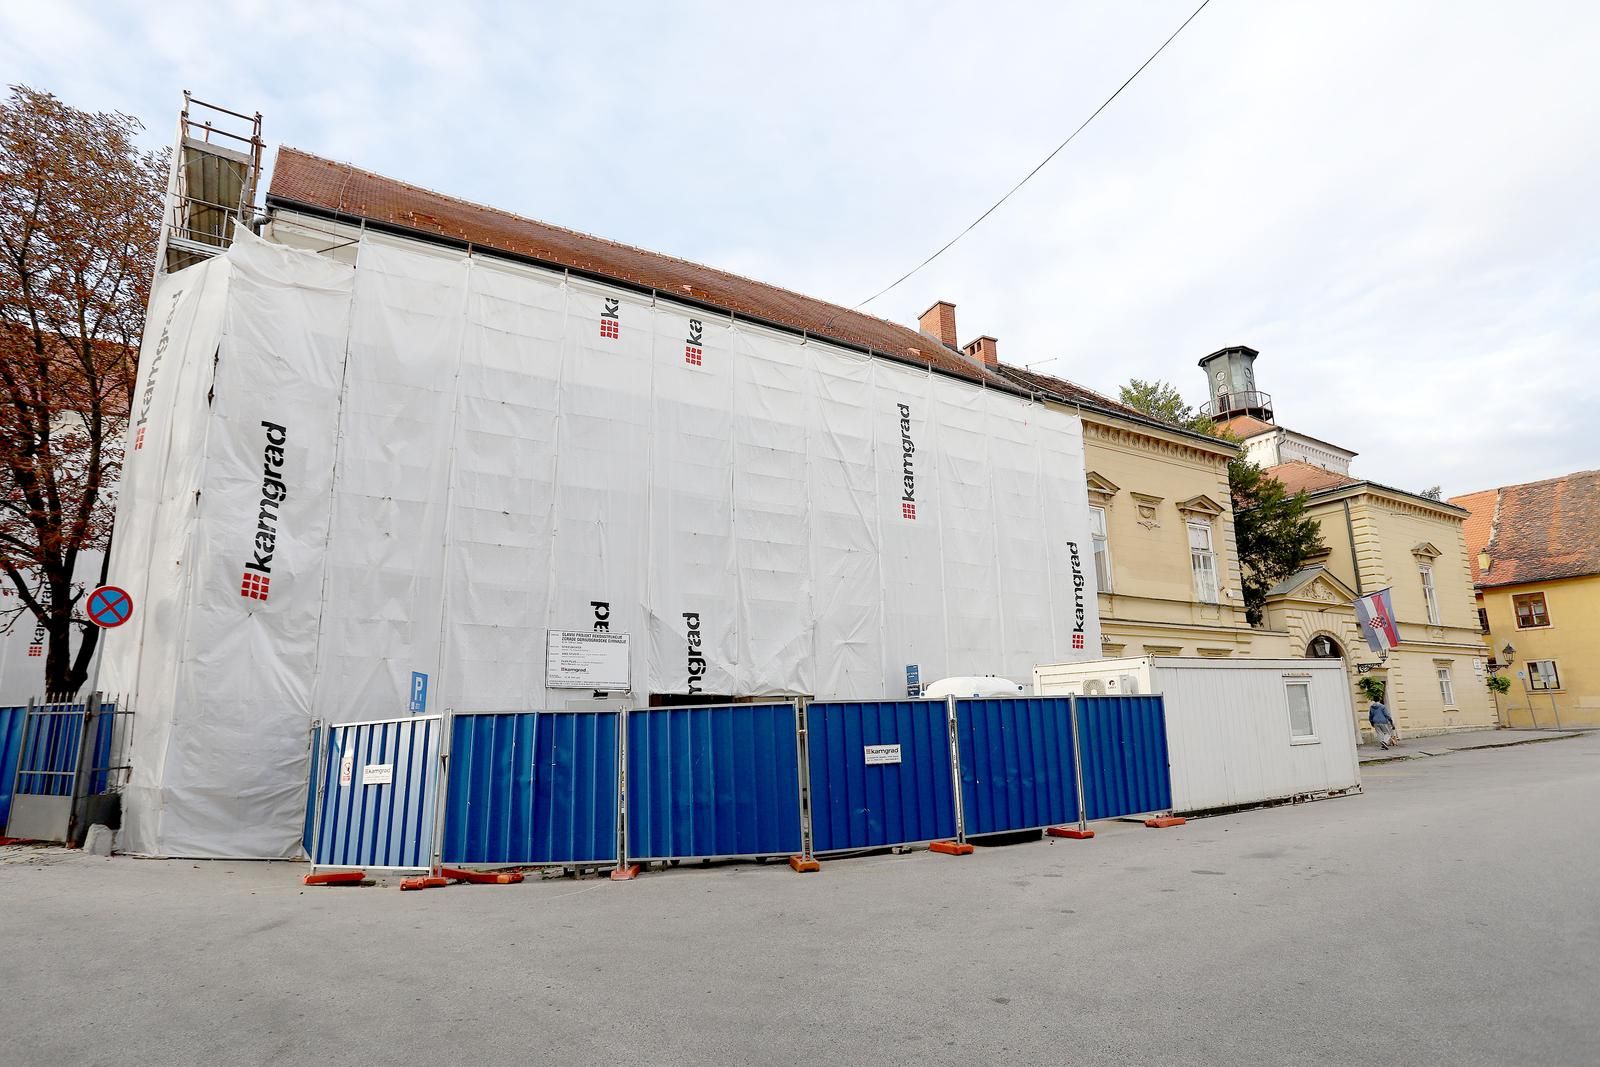 06.10.2021., Zagreb - I dalje su potpuno pusta gradilista skola na Gornjem gradu. Mjesec dana nakon pocetka skolske godine gradska vlast nije nasla nacina da se ponovno pocne s obnovom dvaju gimnazija ostecenih u potresu.